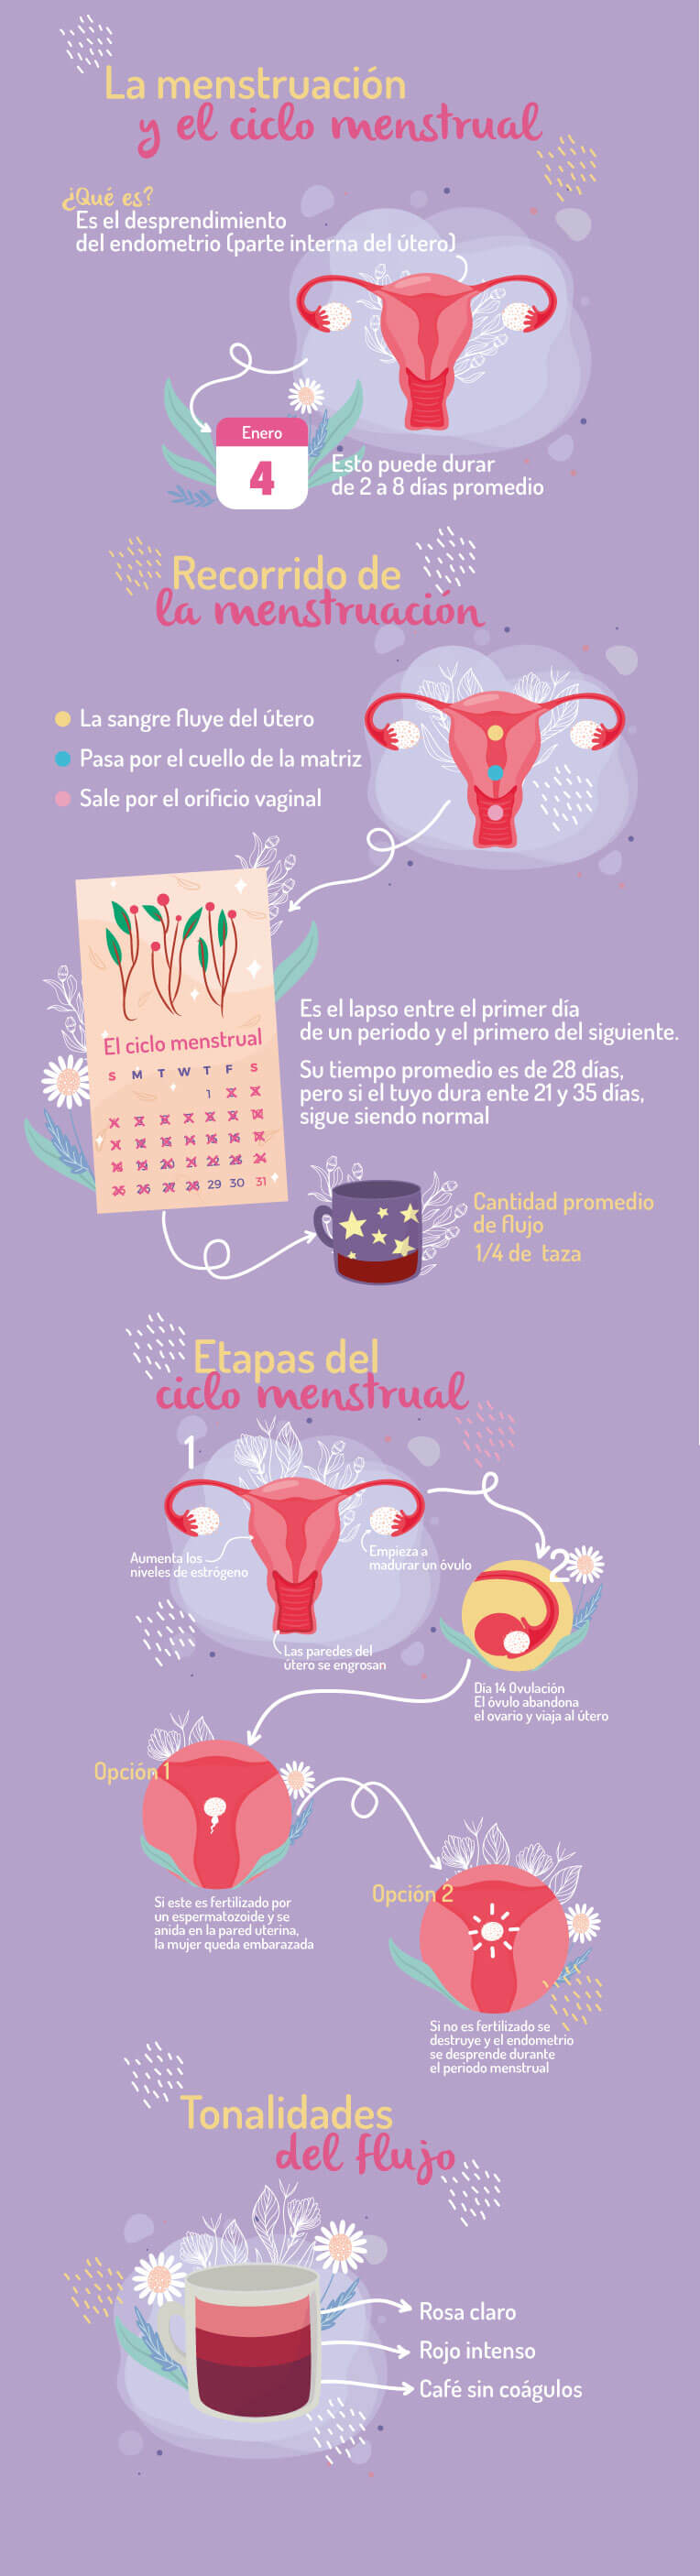 Cómo funciona el ciclo menstrual/periodo